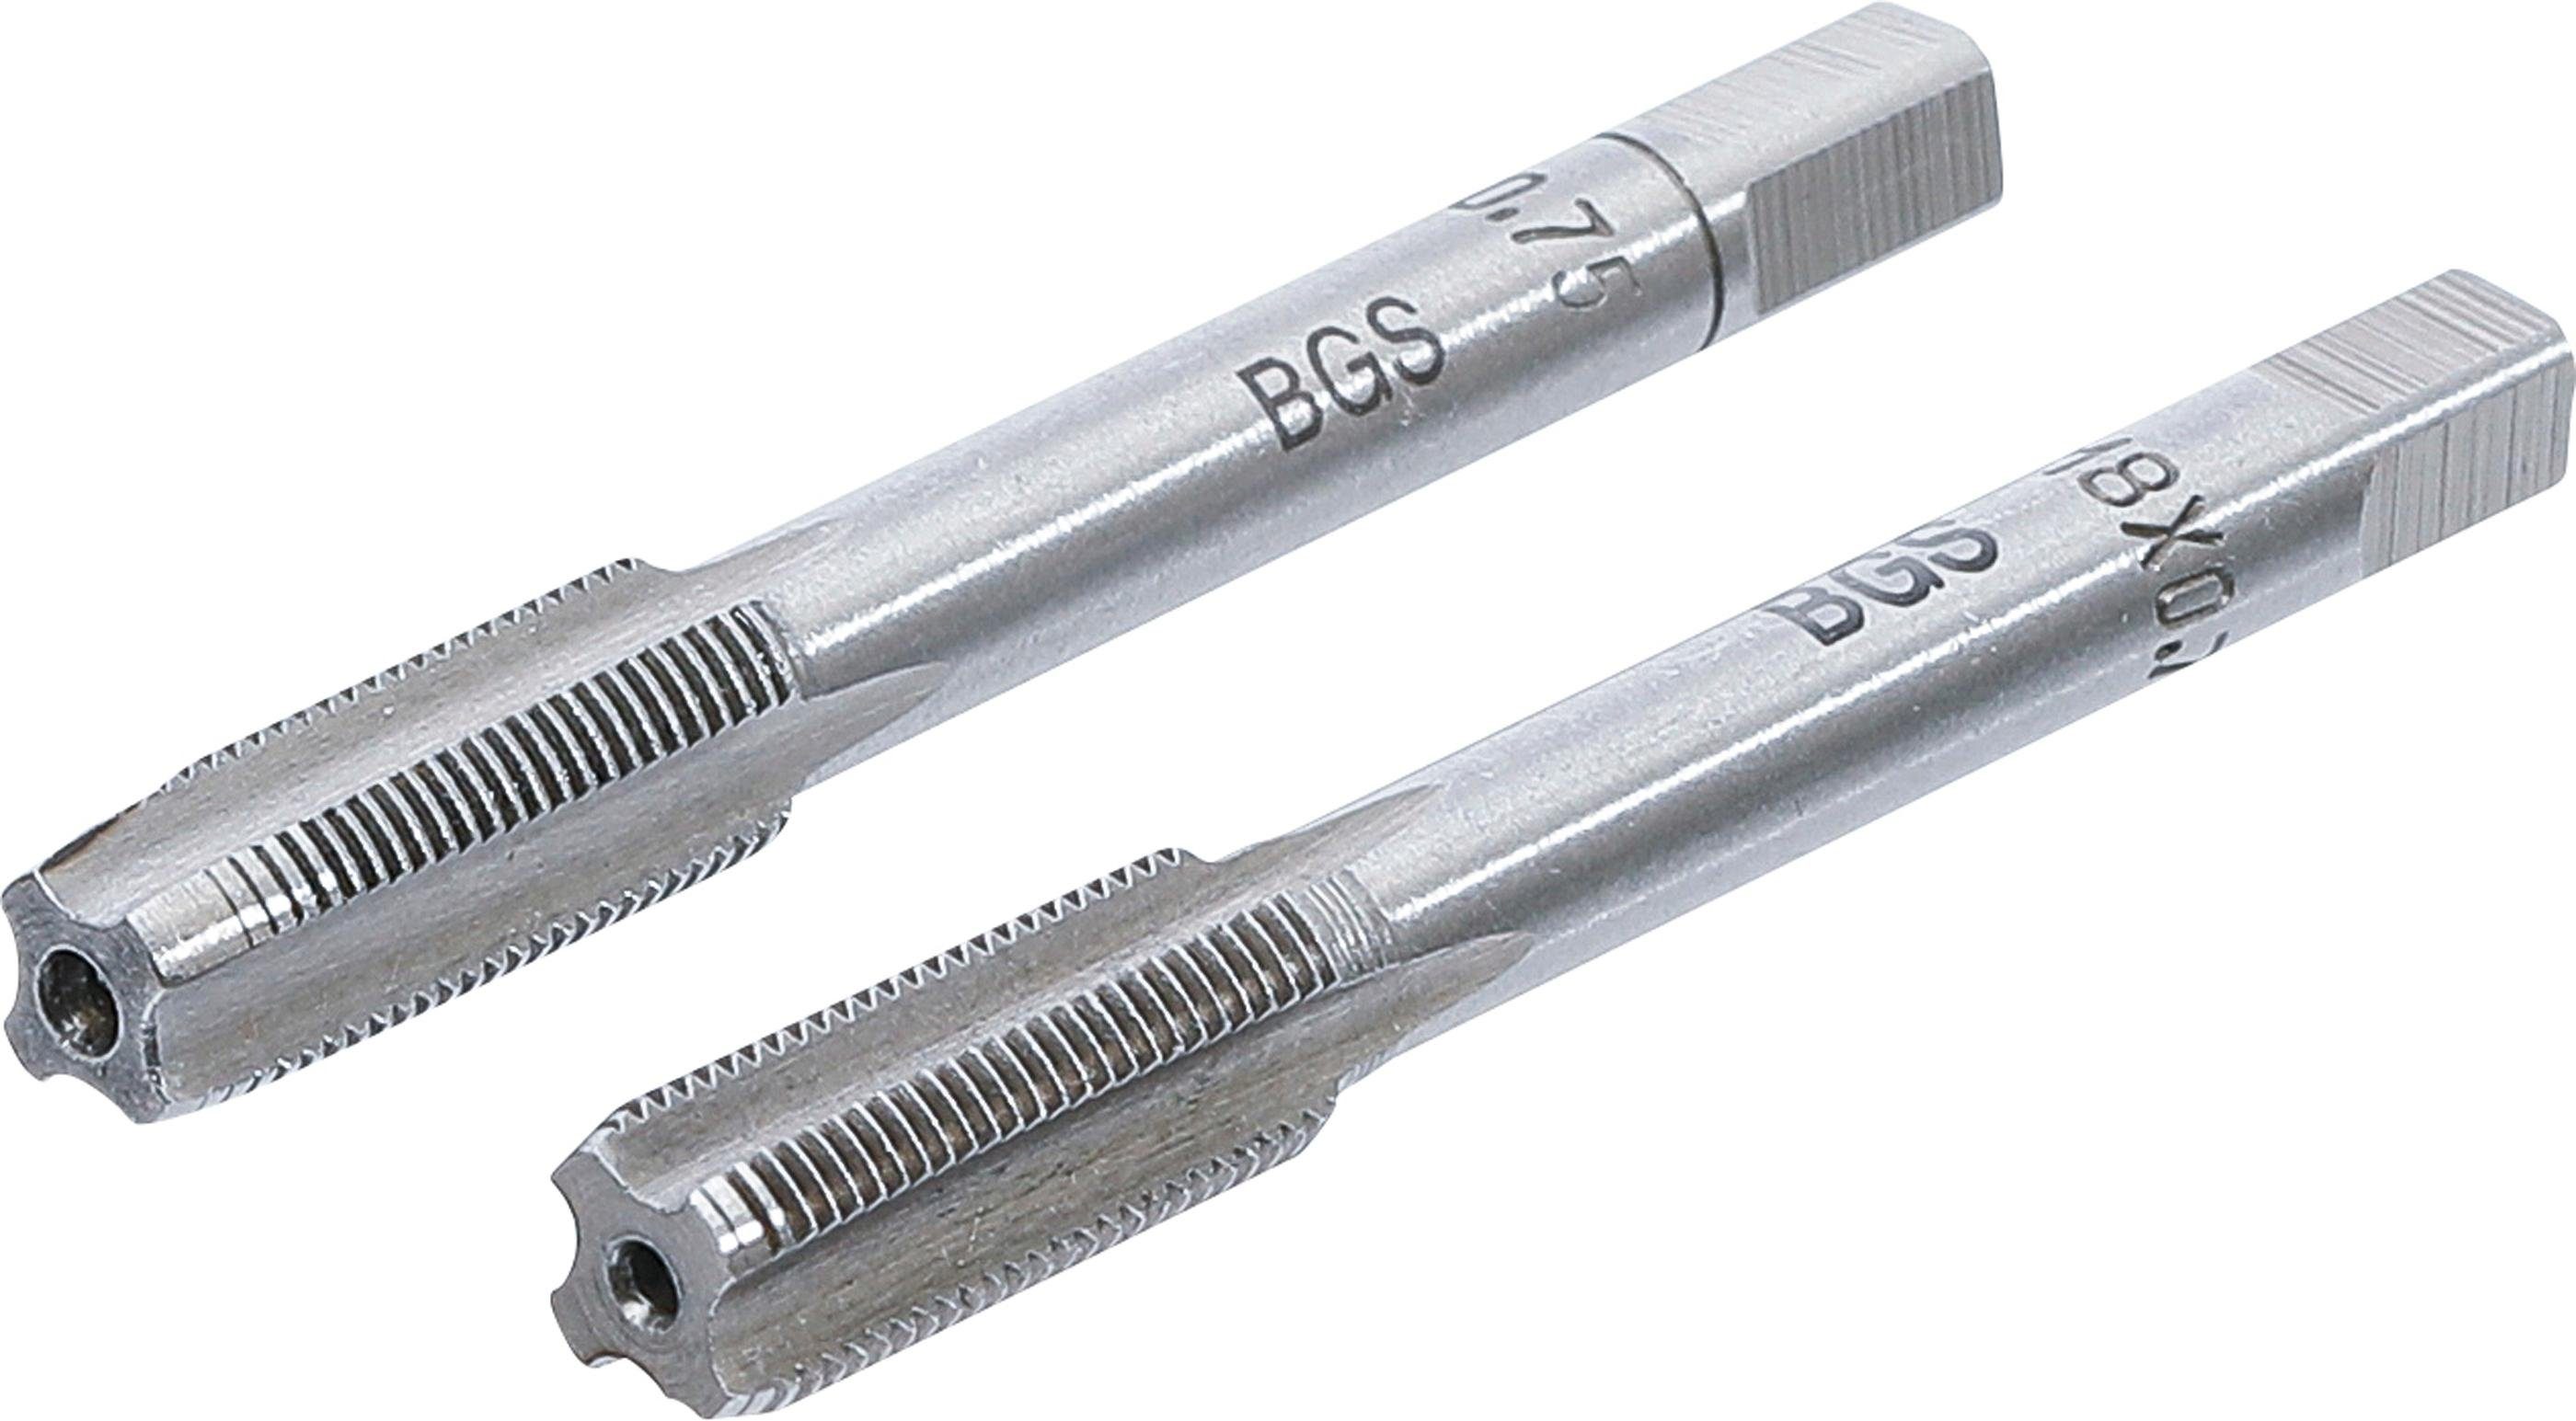 BGS technic Gewindebohrer Gewindebohrer, Vor- und Fertigschneider, M8 x 0,75 mm, 2-tlg.